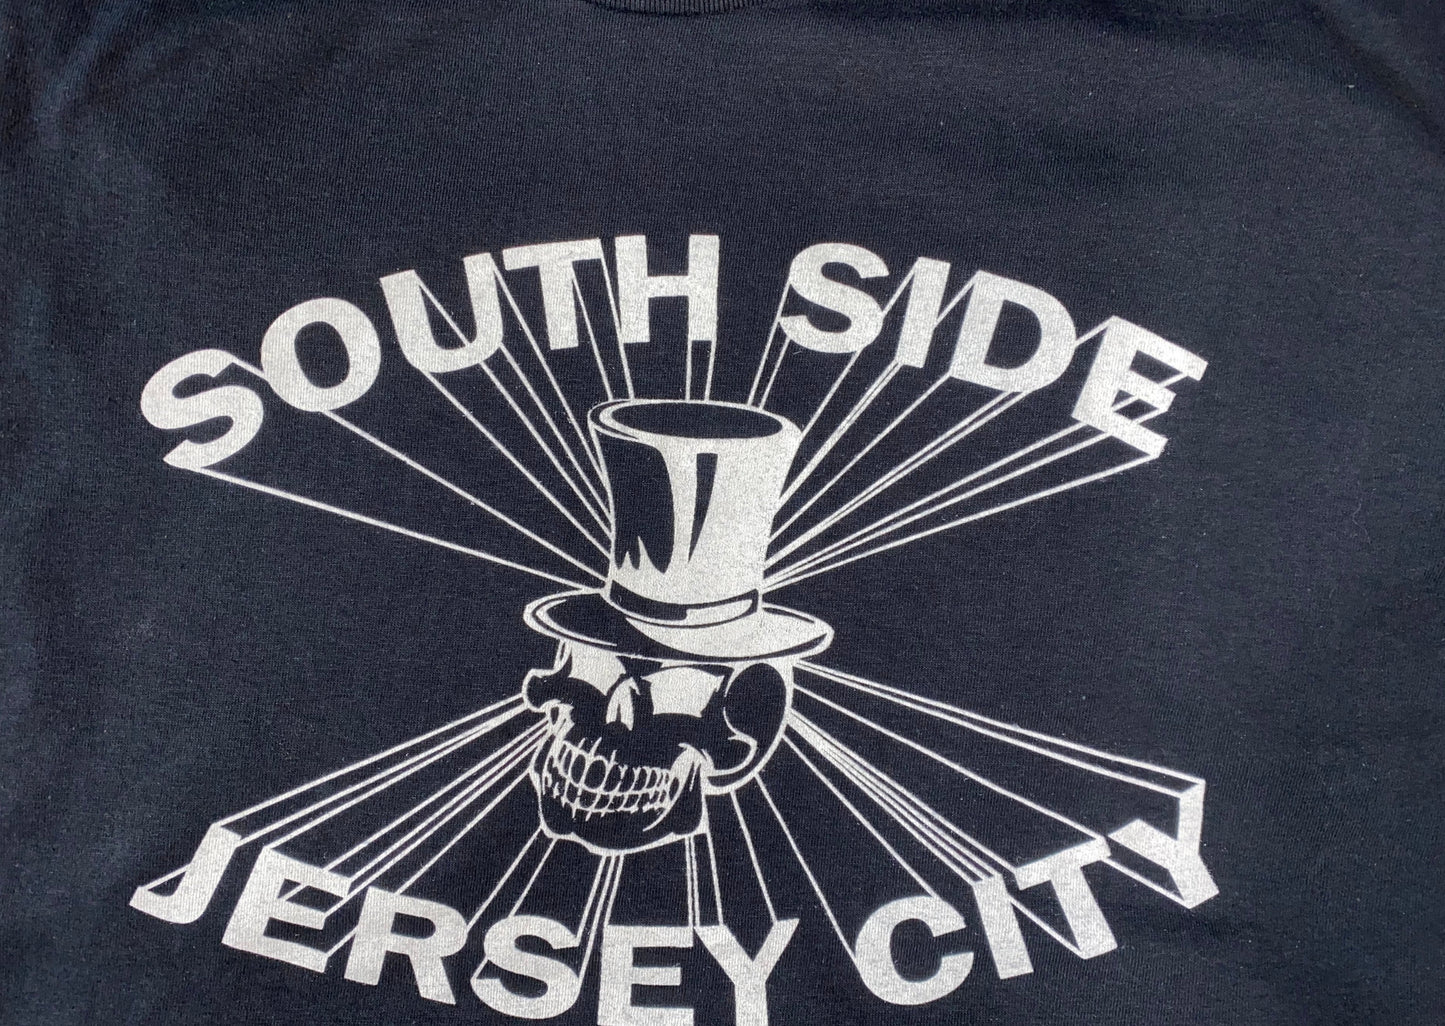 South Side Jersey City